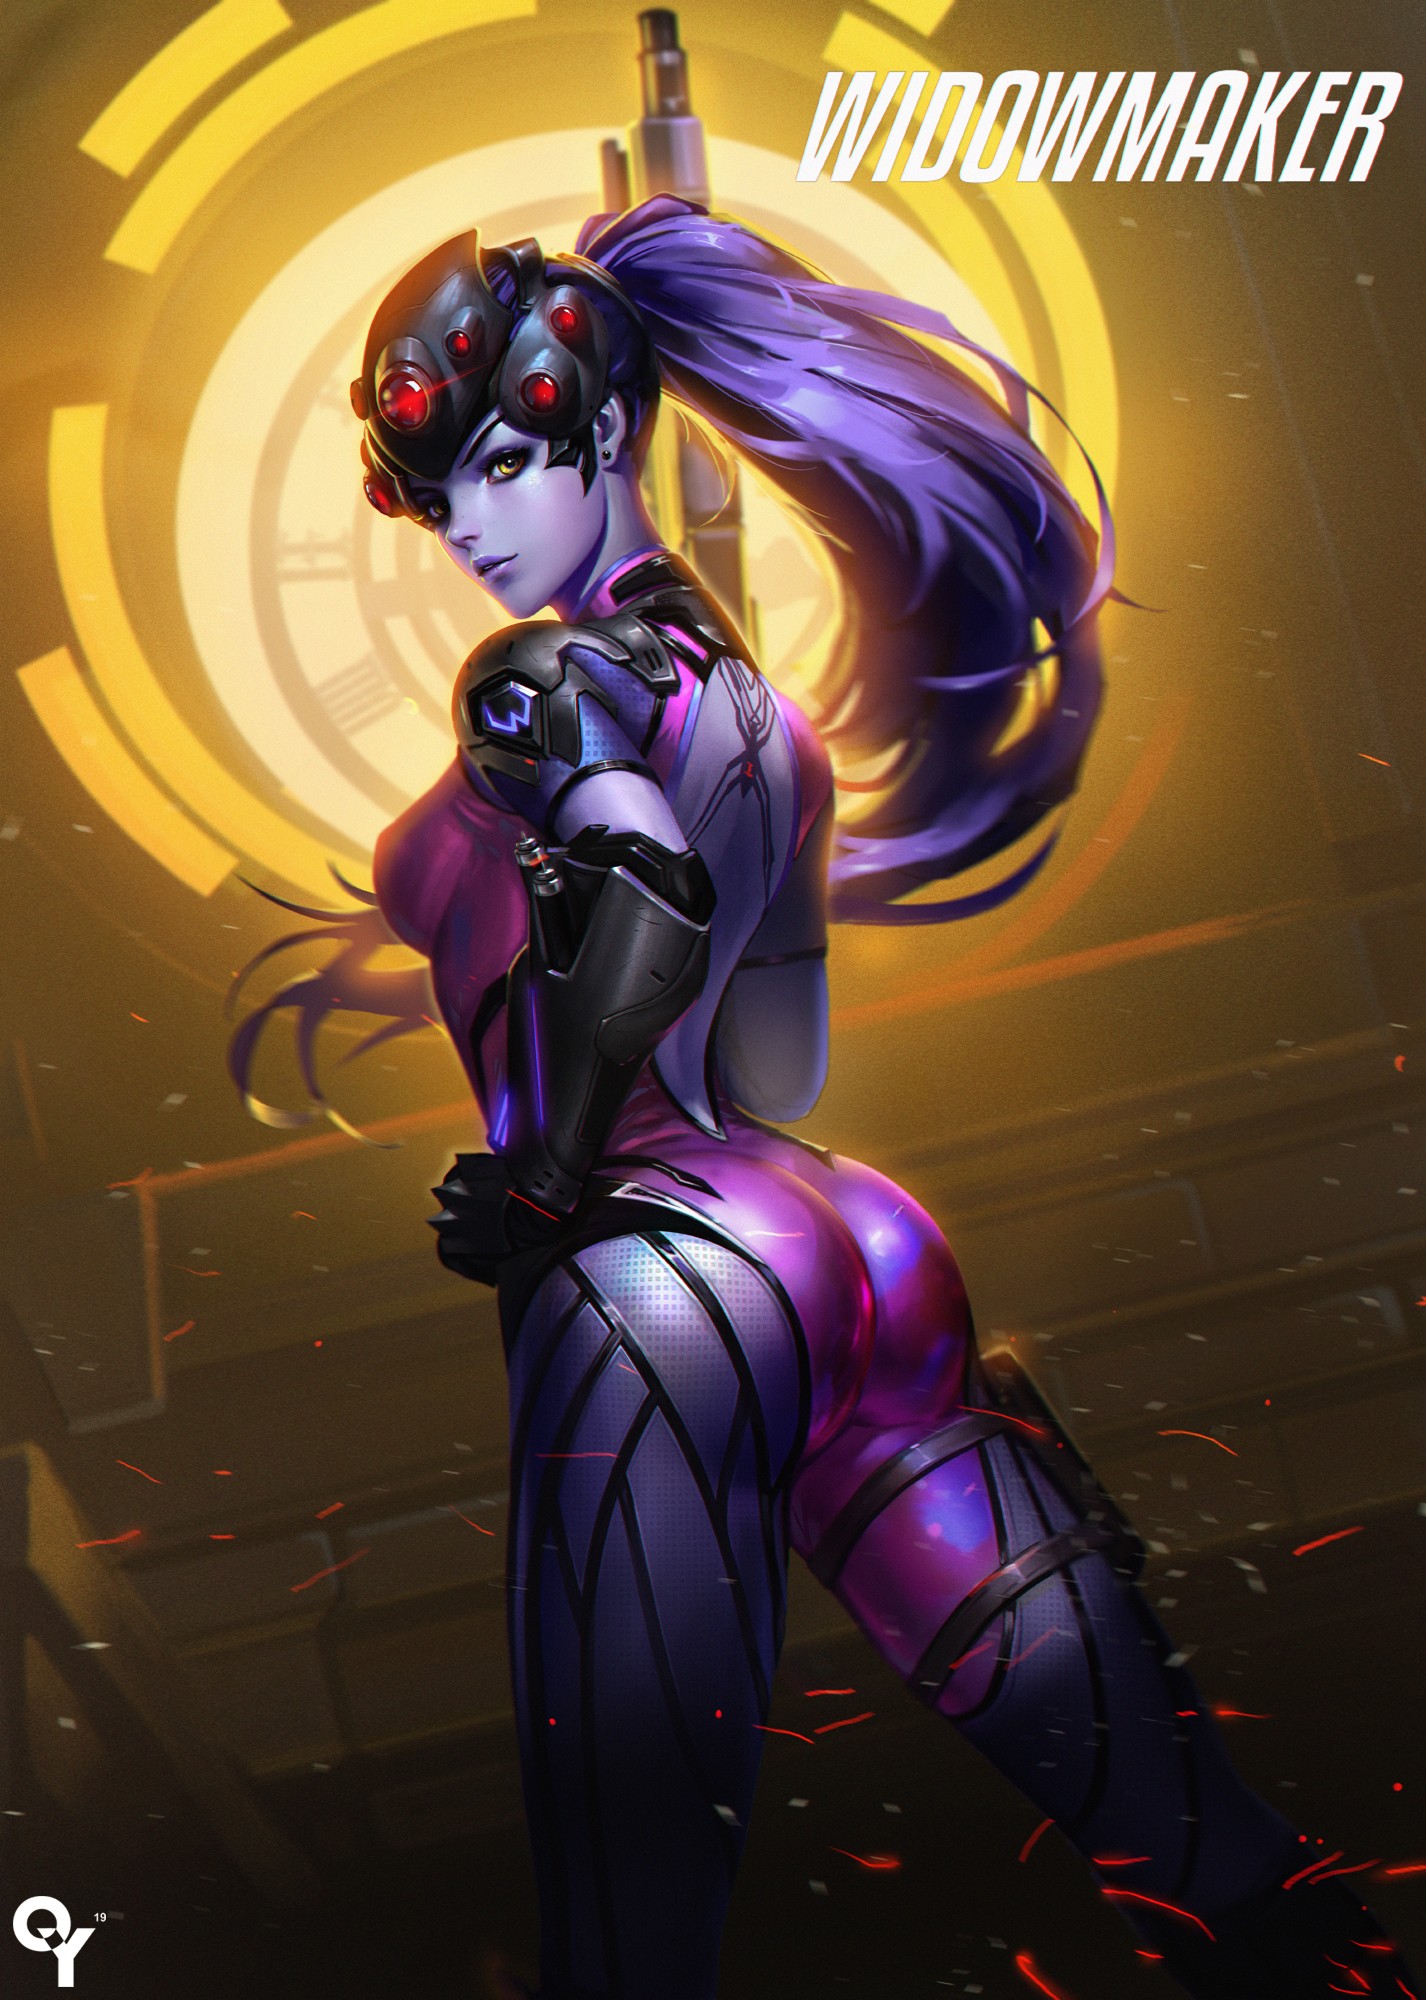 Widowmaker (Overwatch), Long hair, Purple hair, Overwatch, Widowmaker, Bodysuit, Weapon, Gun Wallpaper